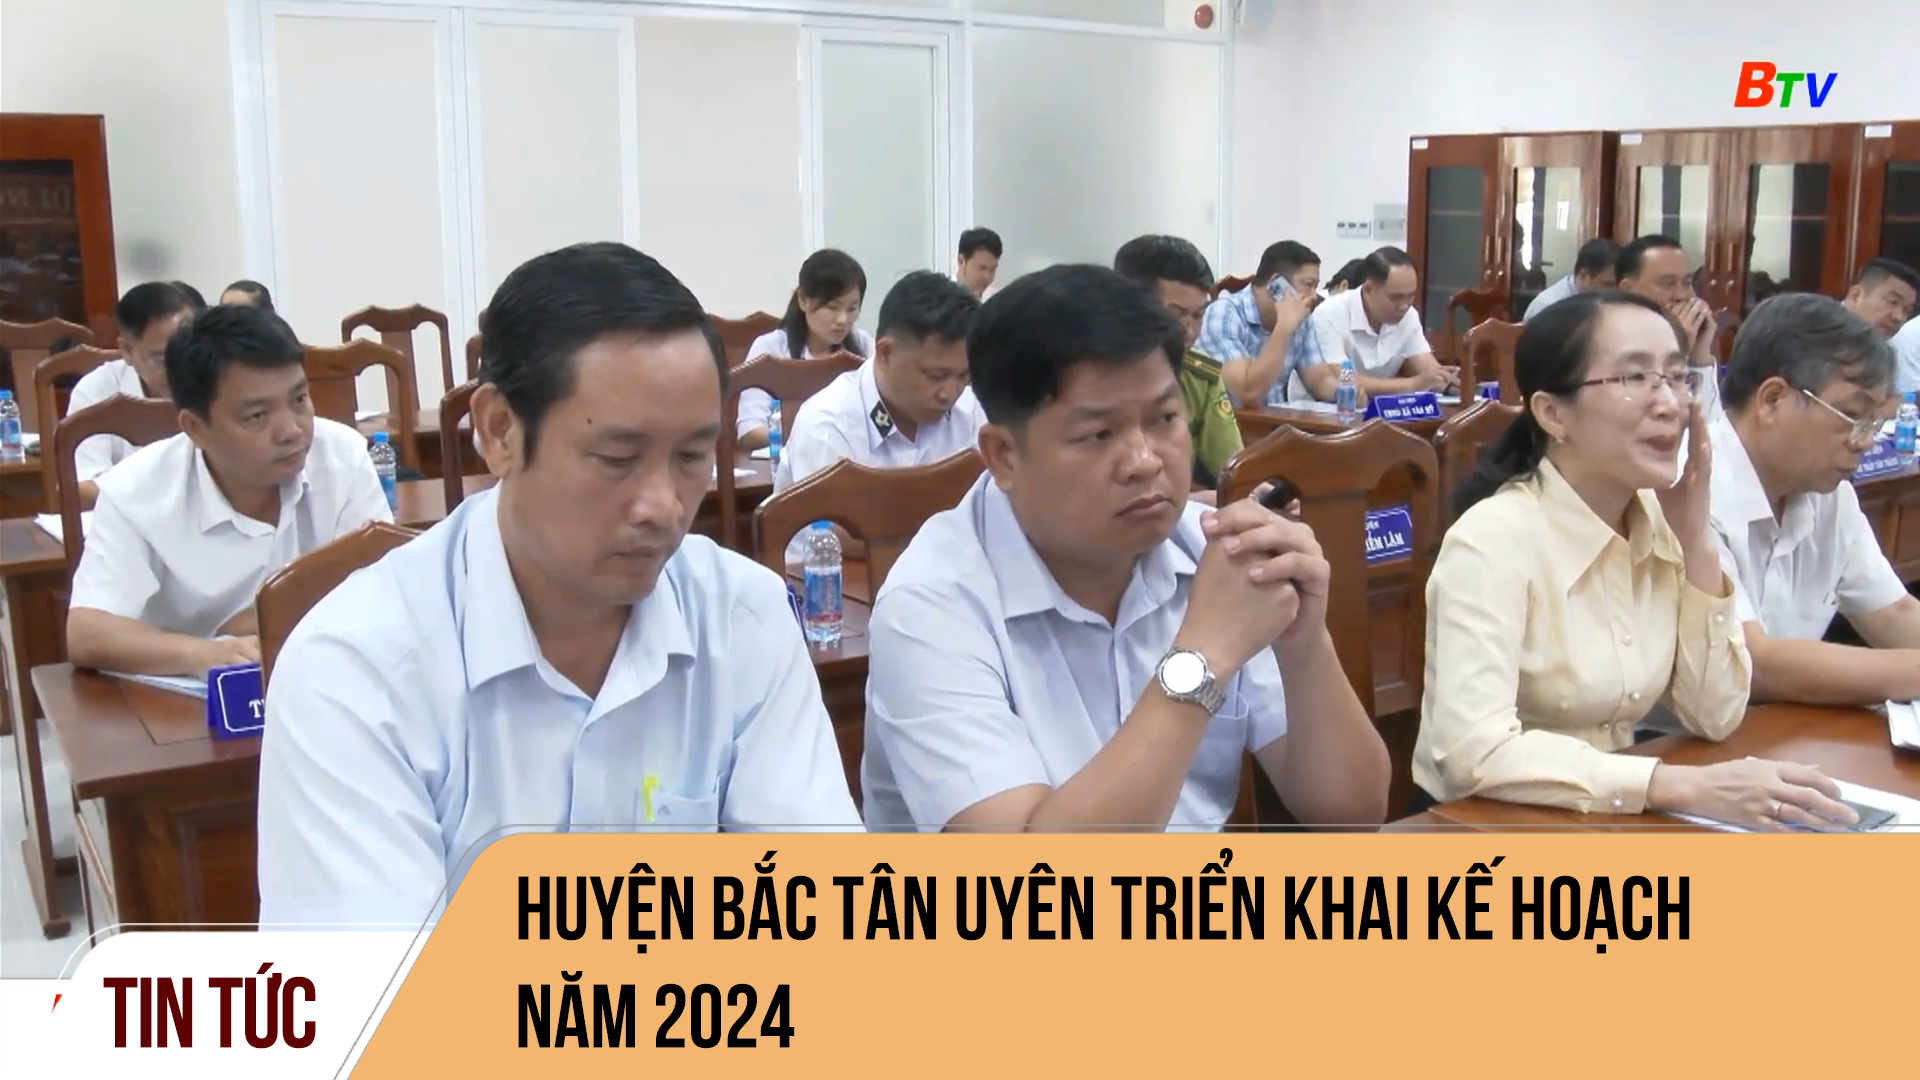 Huyện Bắc Tân Uyên triển khai kế hoạch năm 2024